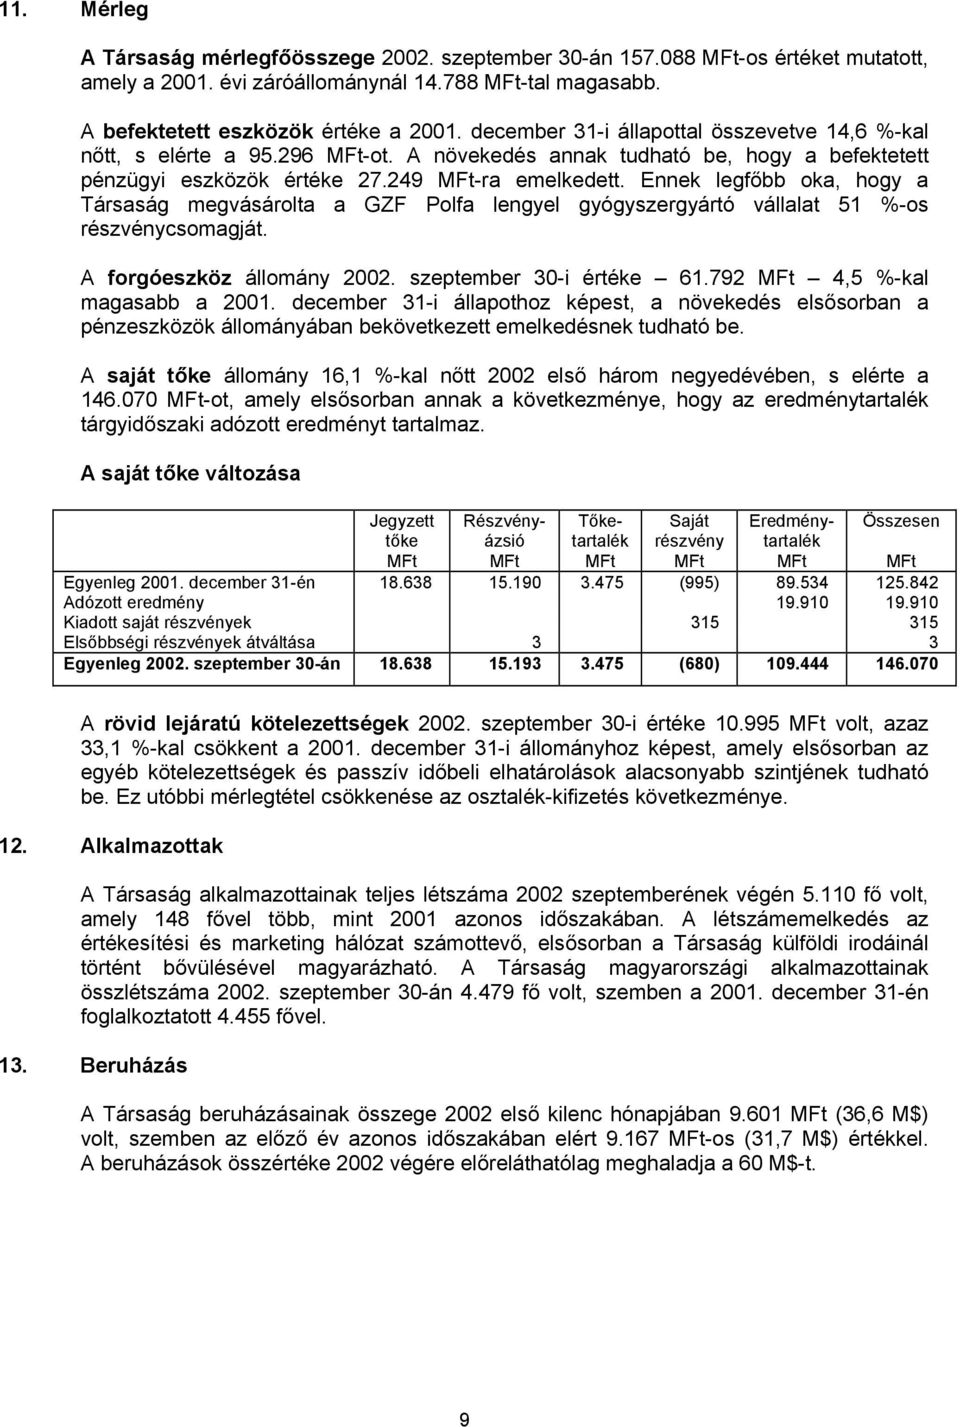 Ennek legfőbb oka, hogy a Társaság megvásárolta a GZF Polfa lengyel gyógyszergyártó vállalat 51 %-os részvénycsomagját. A forgóeszköz állomány 2002. szeptember 30-i értéke 61.